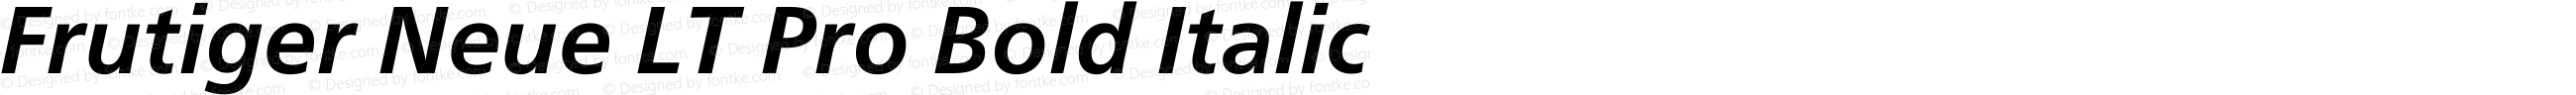 Frutiger Neue LT Pro Bold Italic